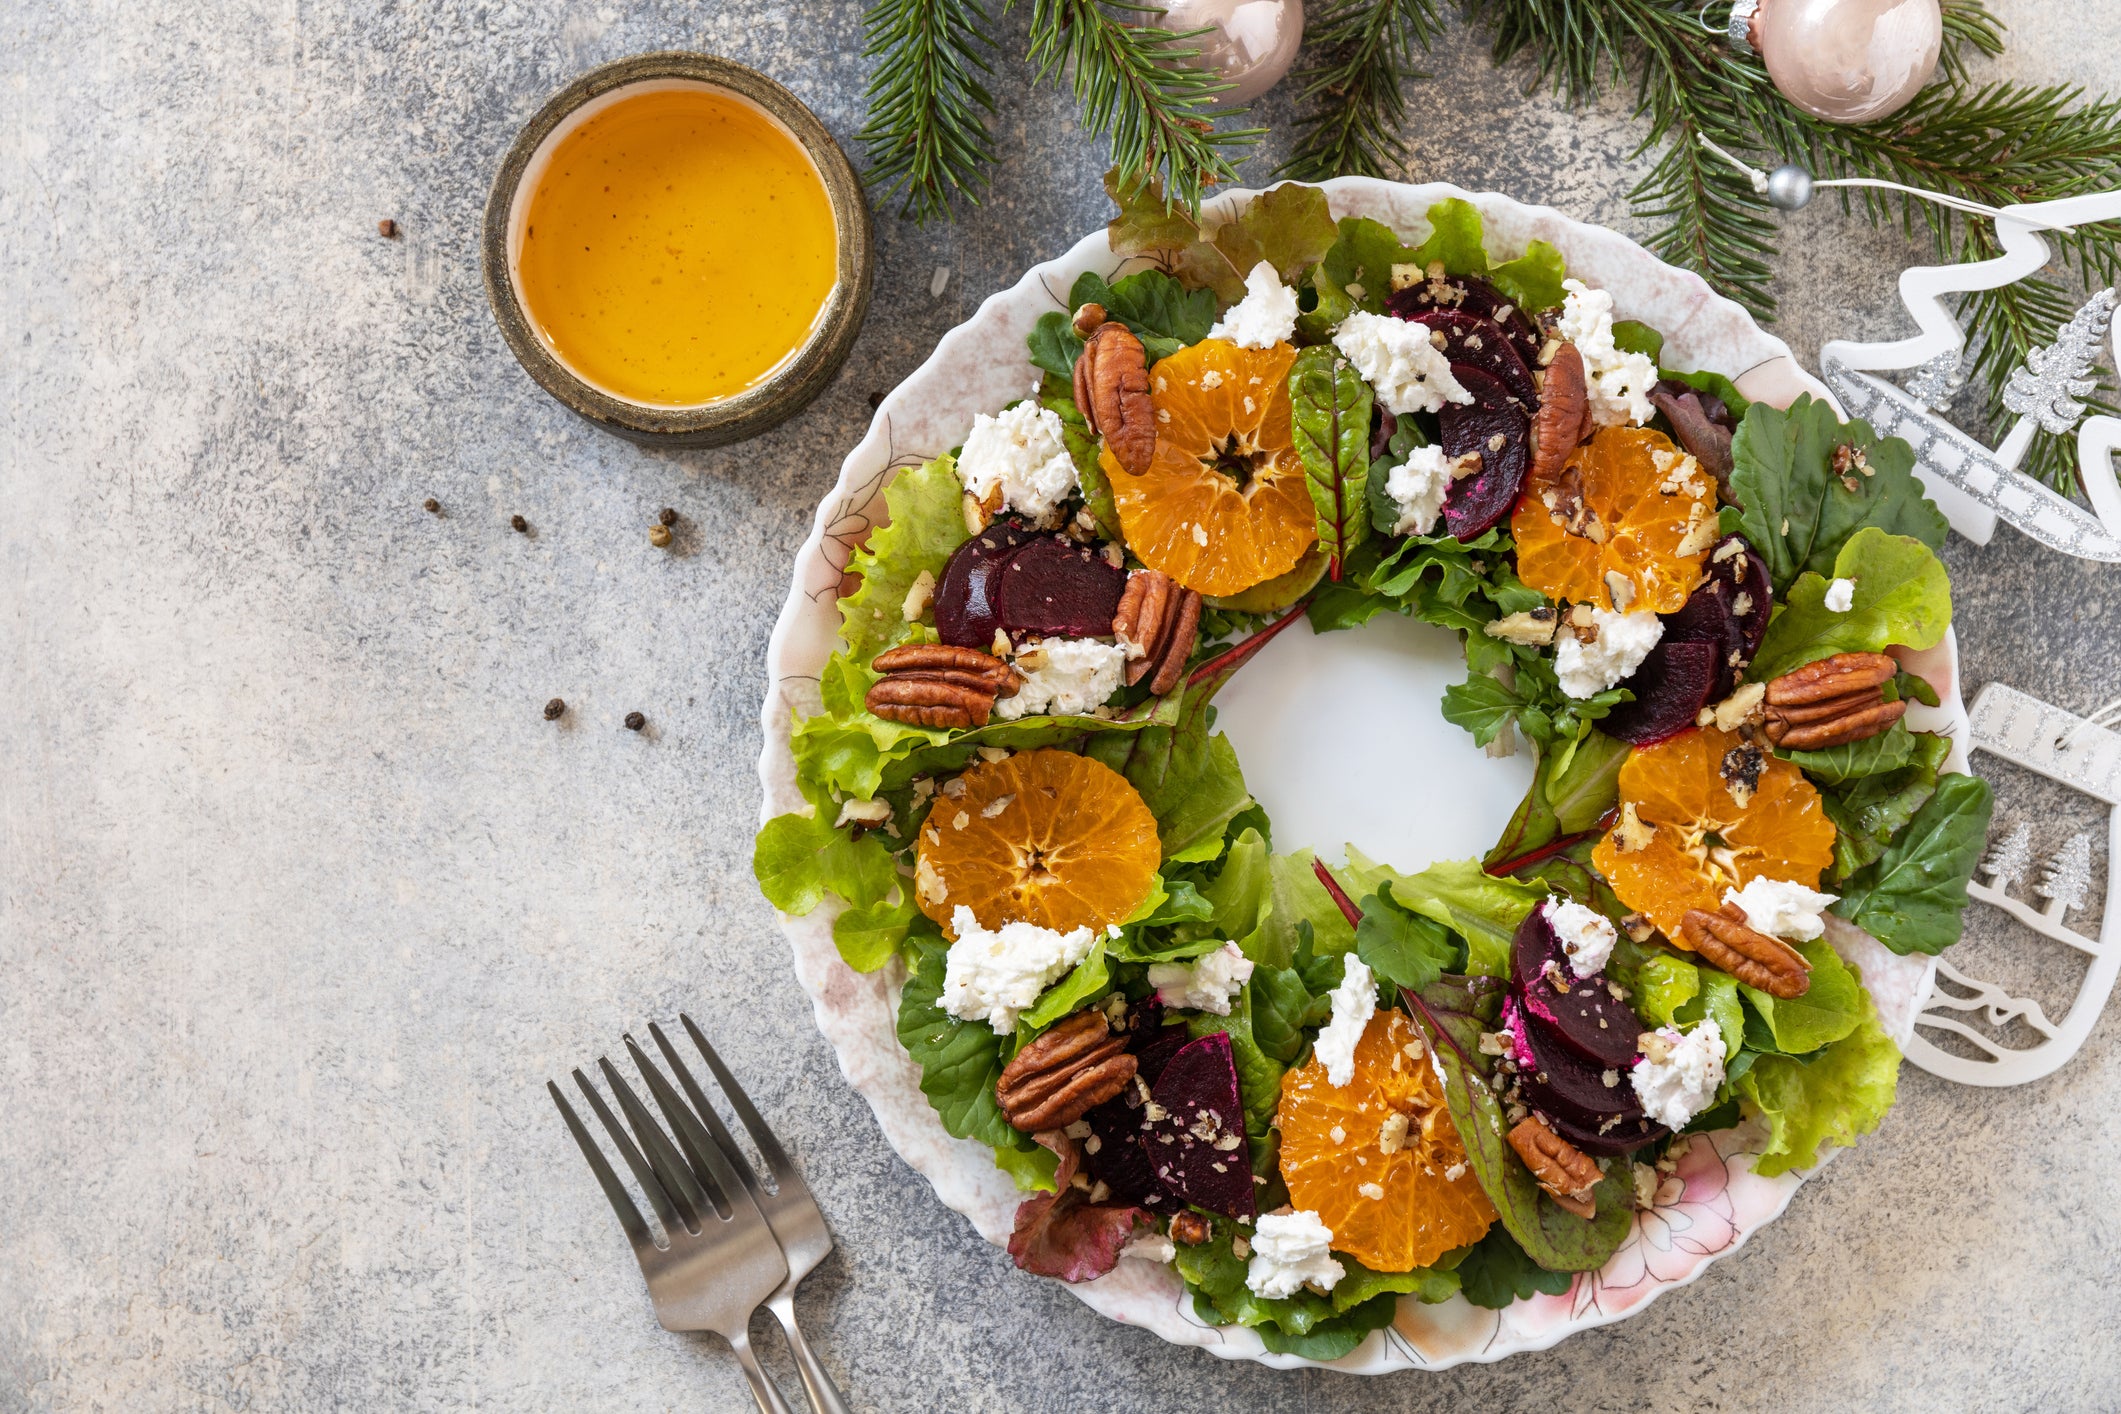 Christmas Salad with Herb-Grapefruit Vinaigrette